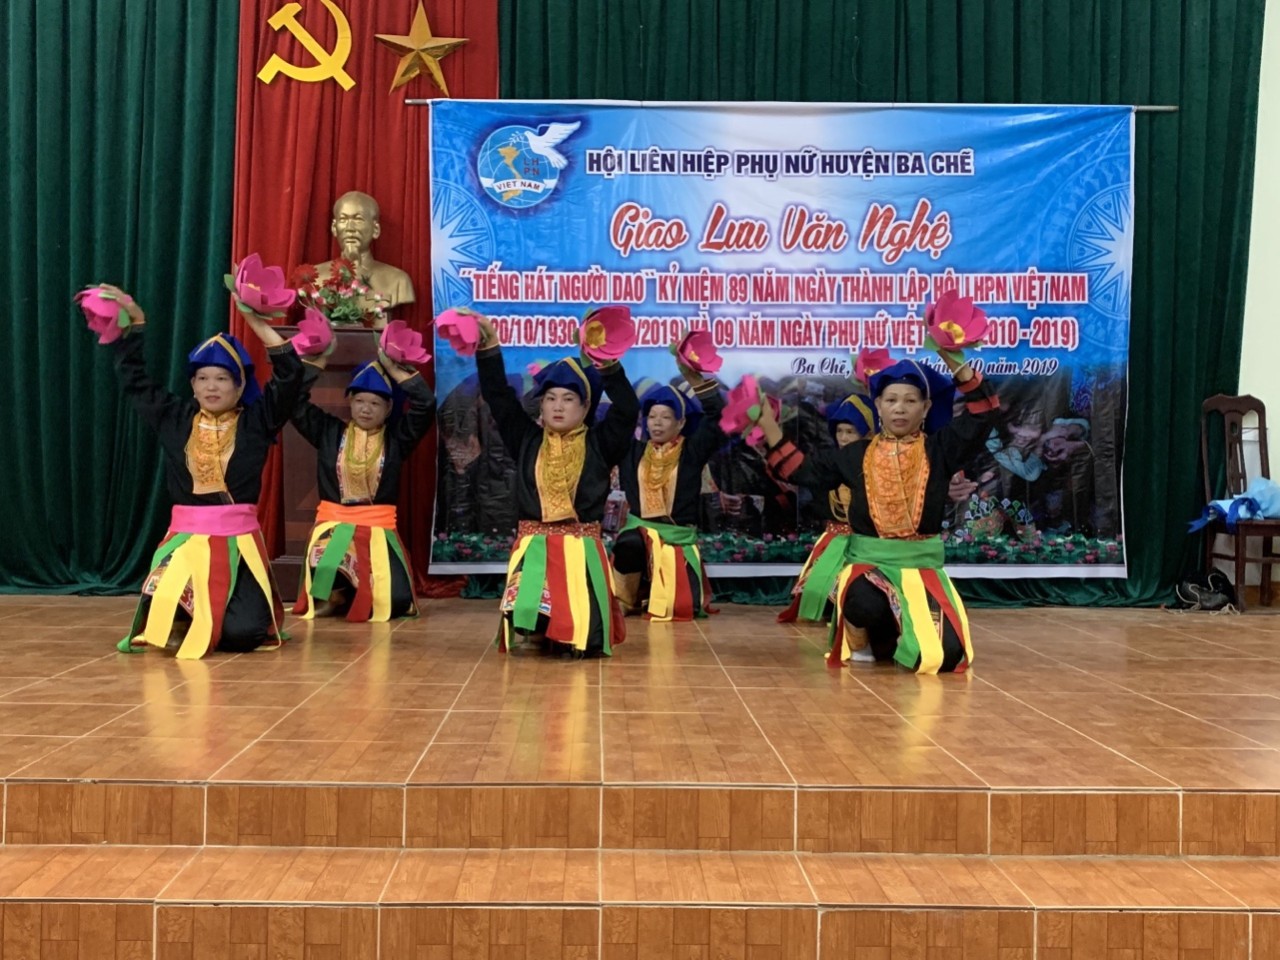 Hội LHPN huyện Ba Chẽ tổ chức giao lưu văn nghệ nhân ngày Phụ nữ Việt Nam 20/10/2019